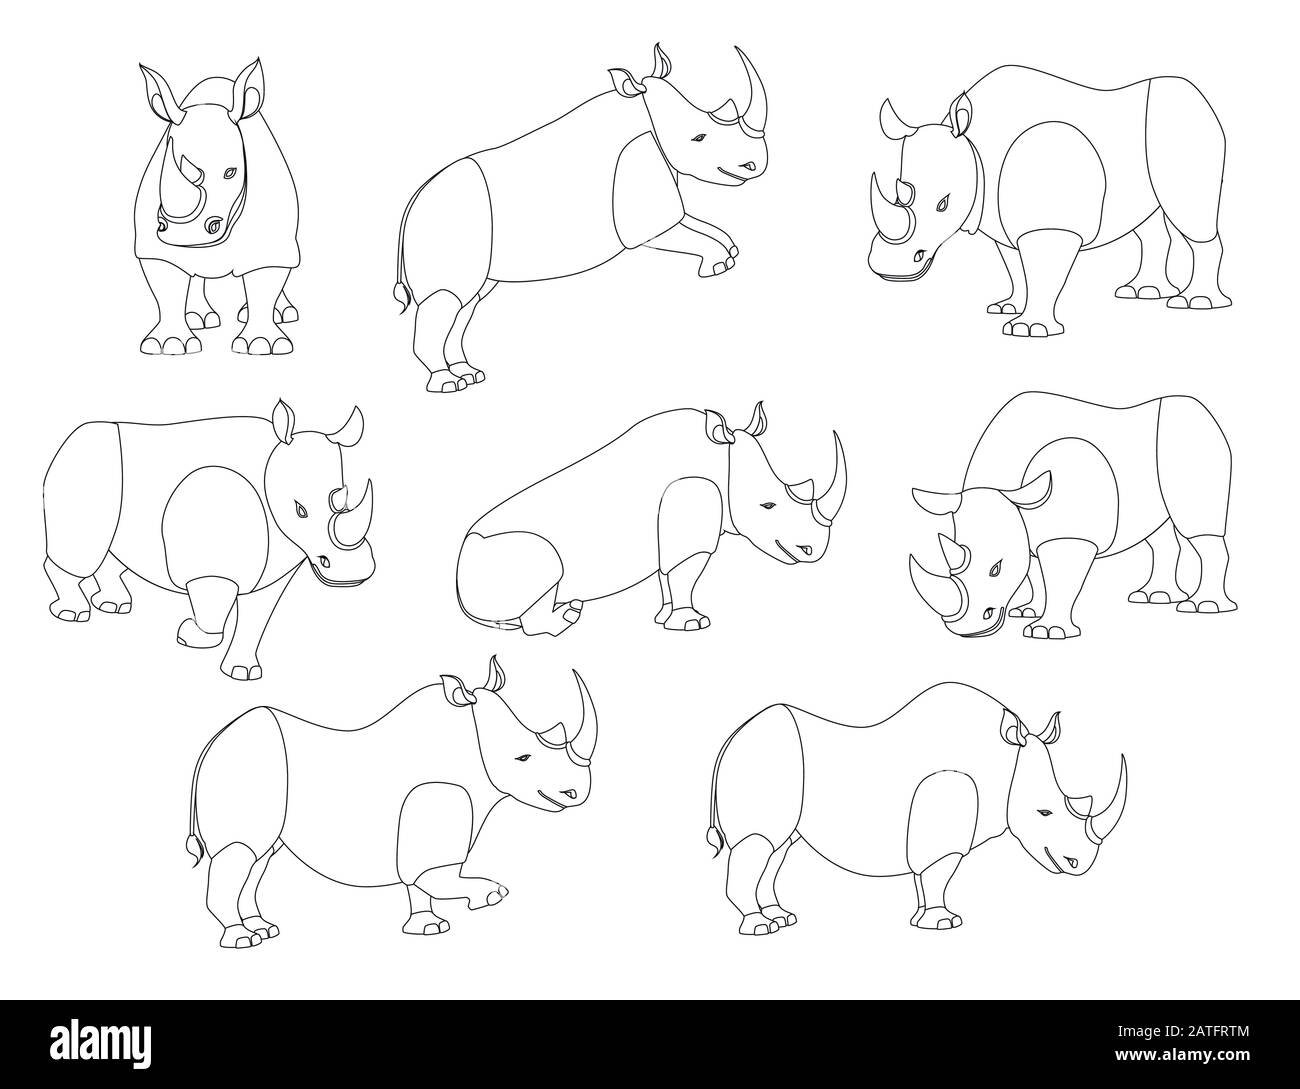 Ensemble de rhinocéros africains dans différentes poses contour dessin animal dessin illustration plate vecteur isolé sur fond blanc Illustration de Vecteur